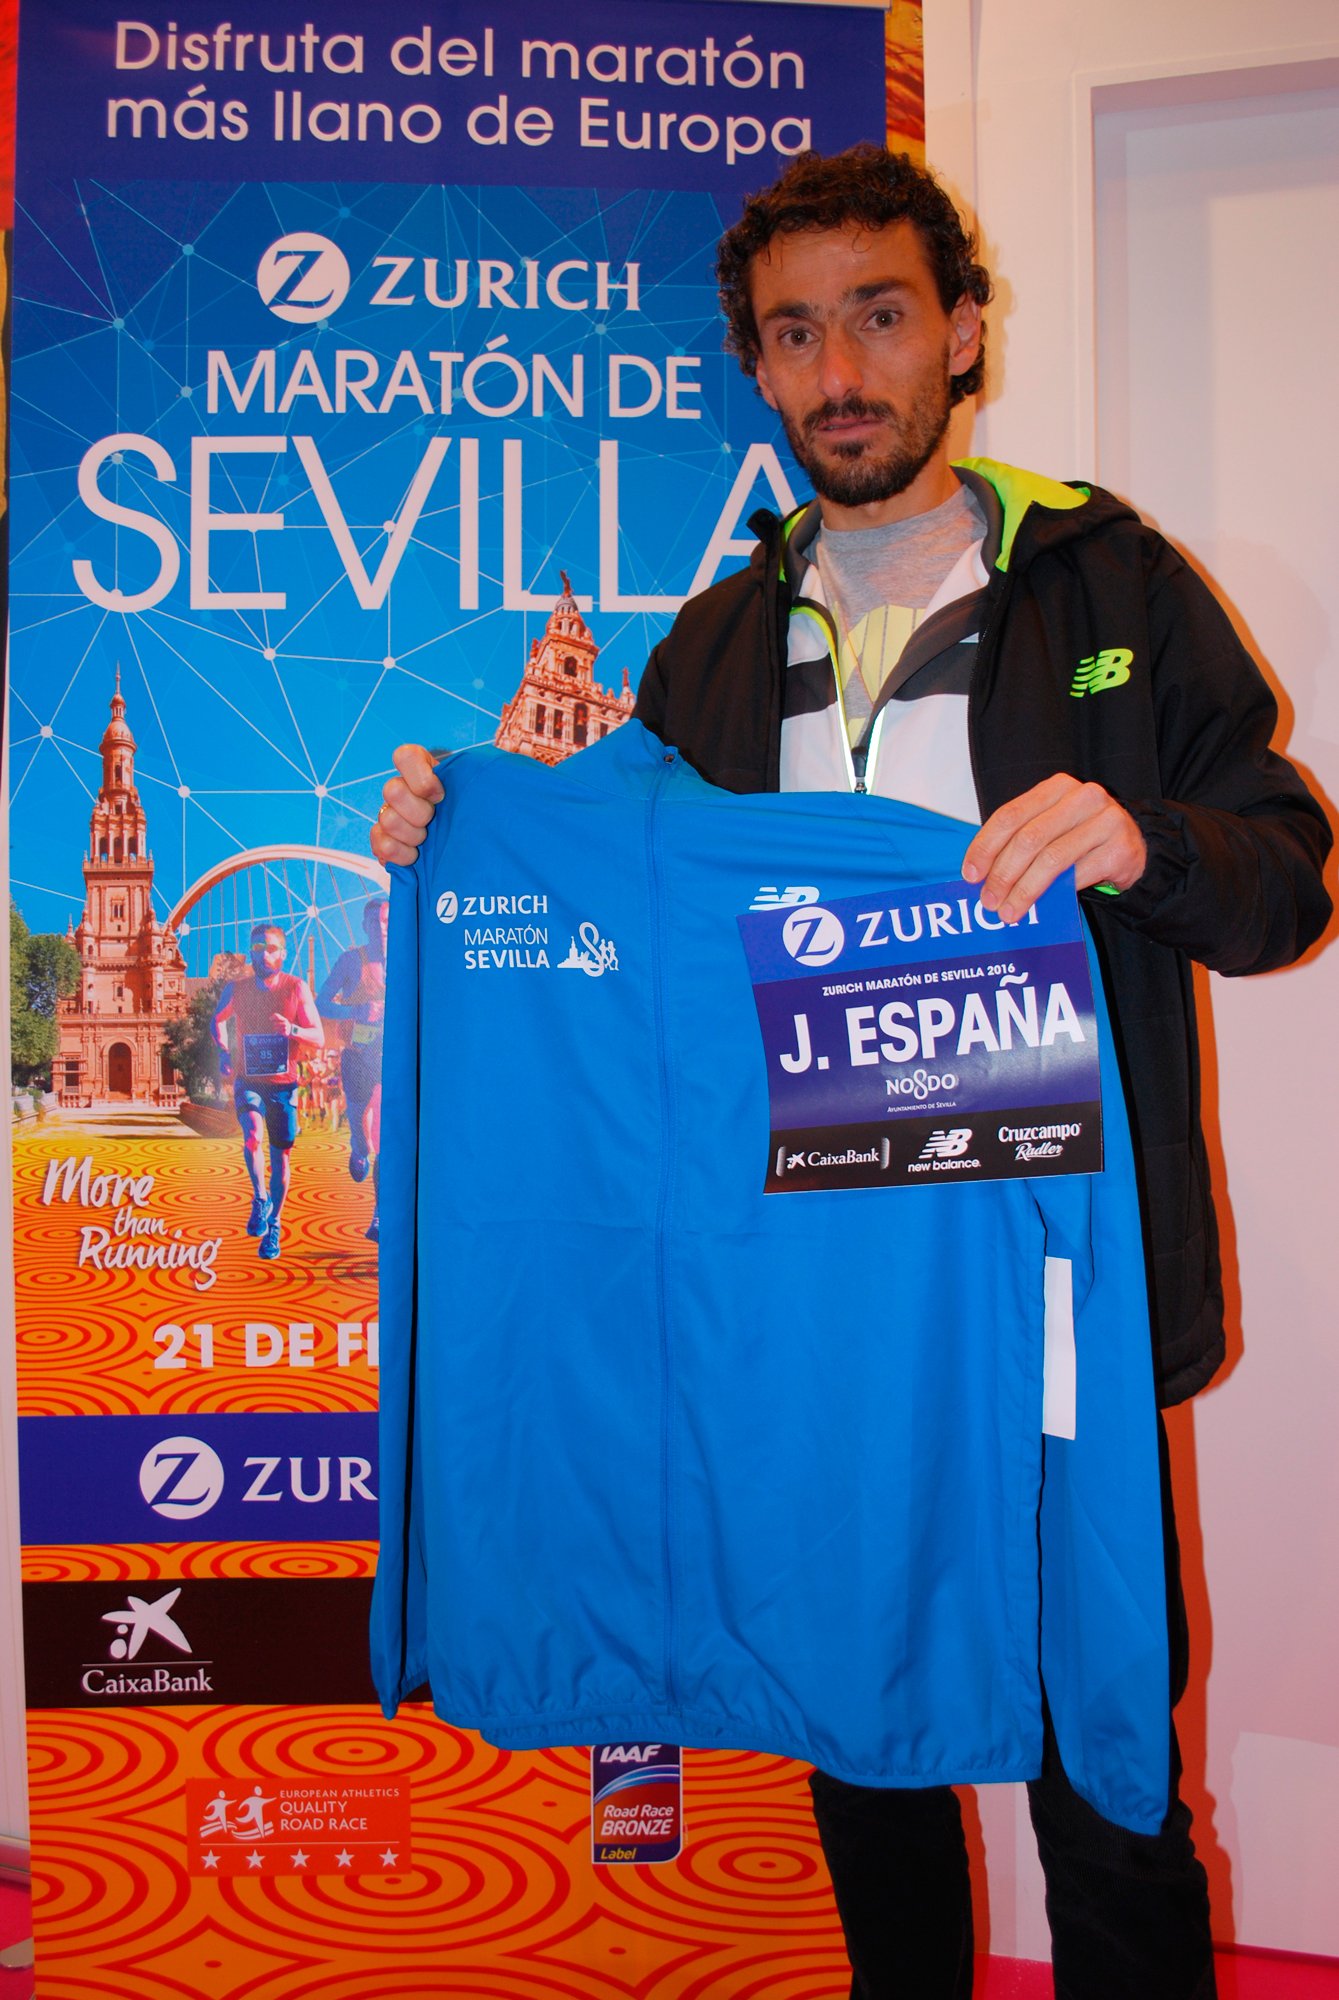 Zurich Maratón de Sevilla on Twitter: "Jesús España nos enseña el cortavientos que los participantes #ZurichMaratonSevilla16 https://t.co/iskdwnuosM" / Twitter